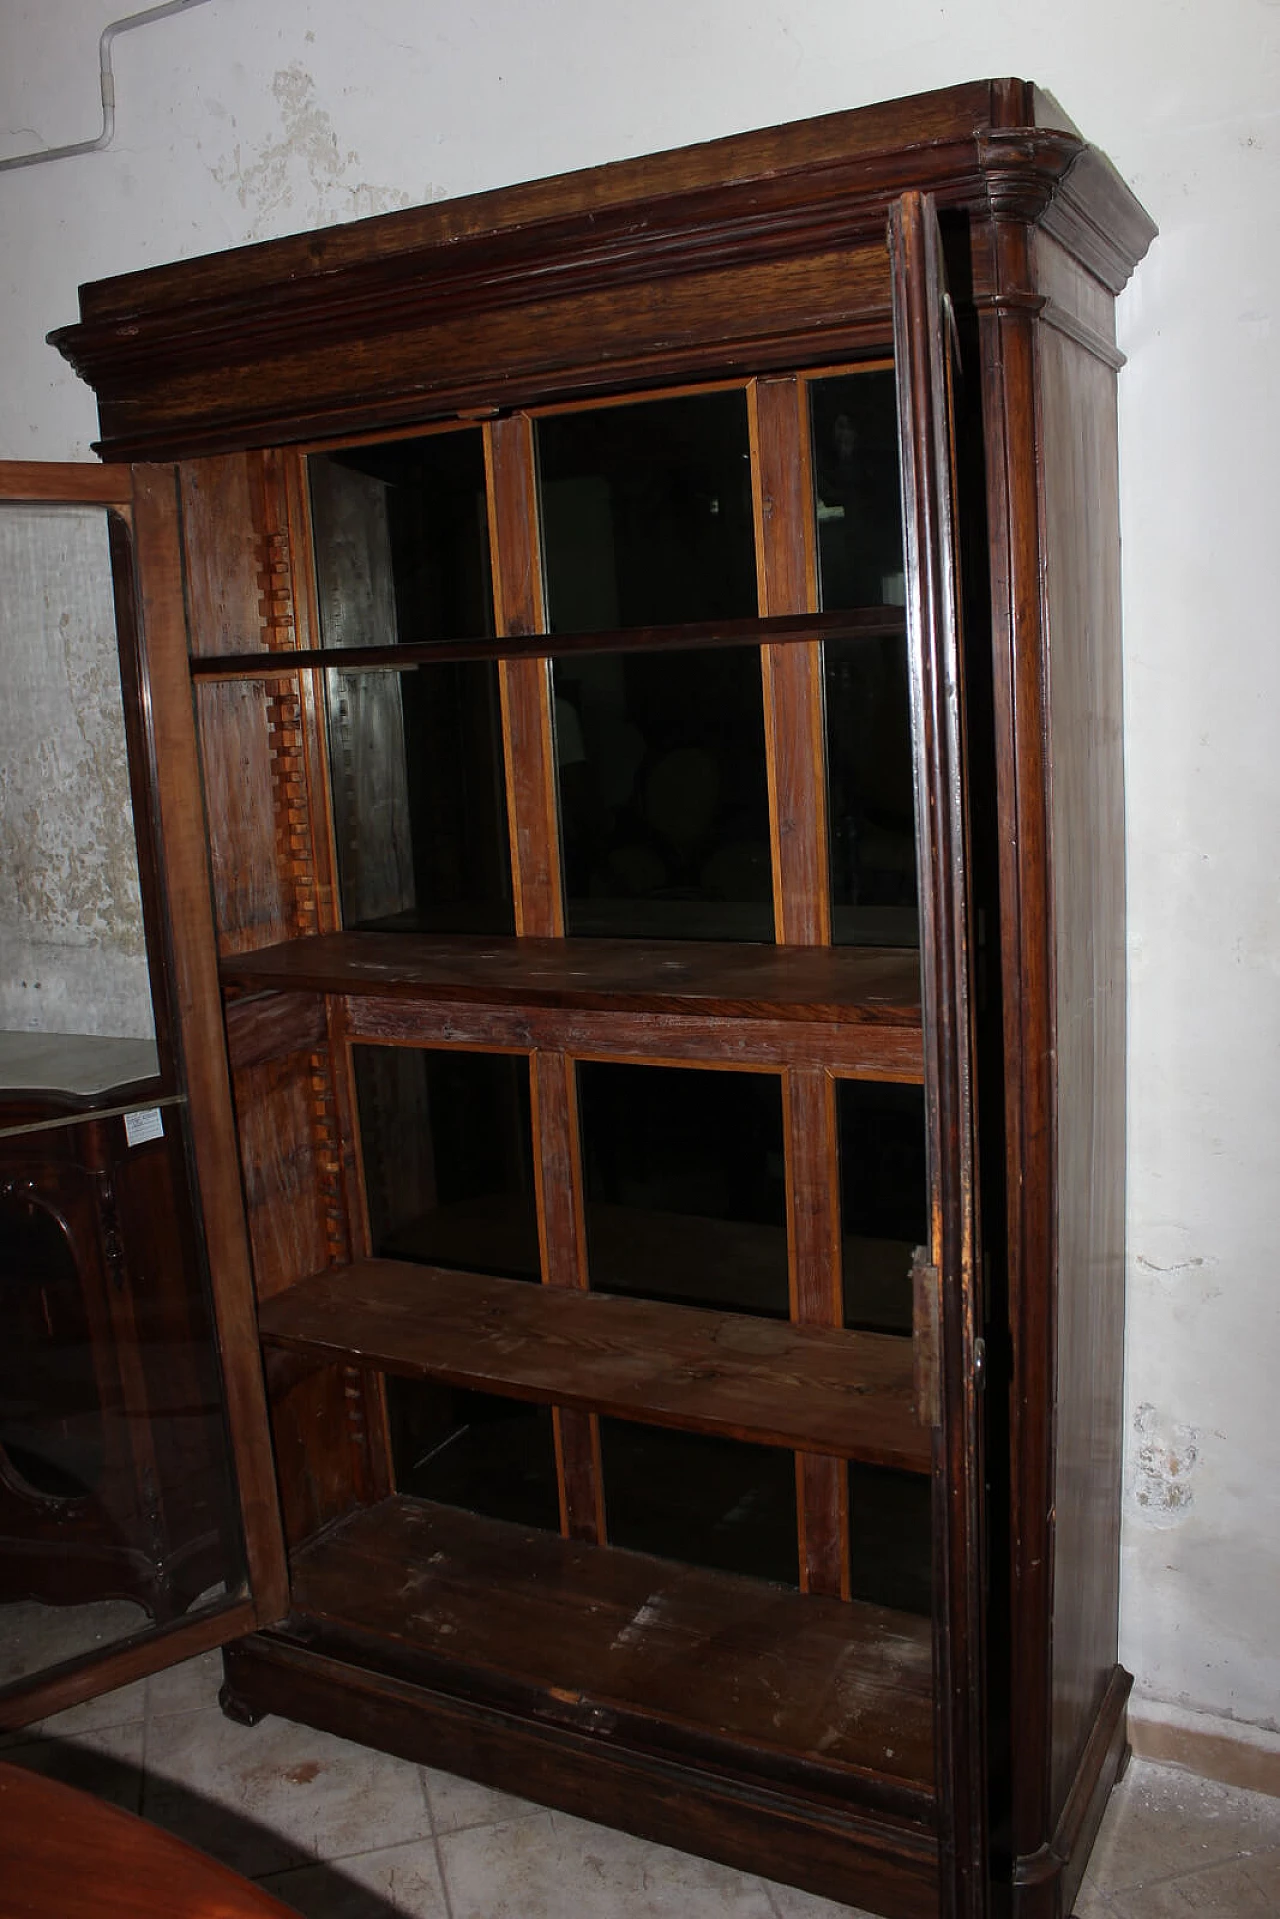 Neapolitan two-door bookcase, '800 1157571